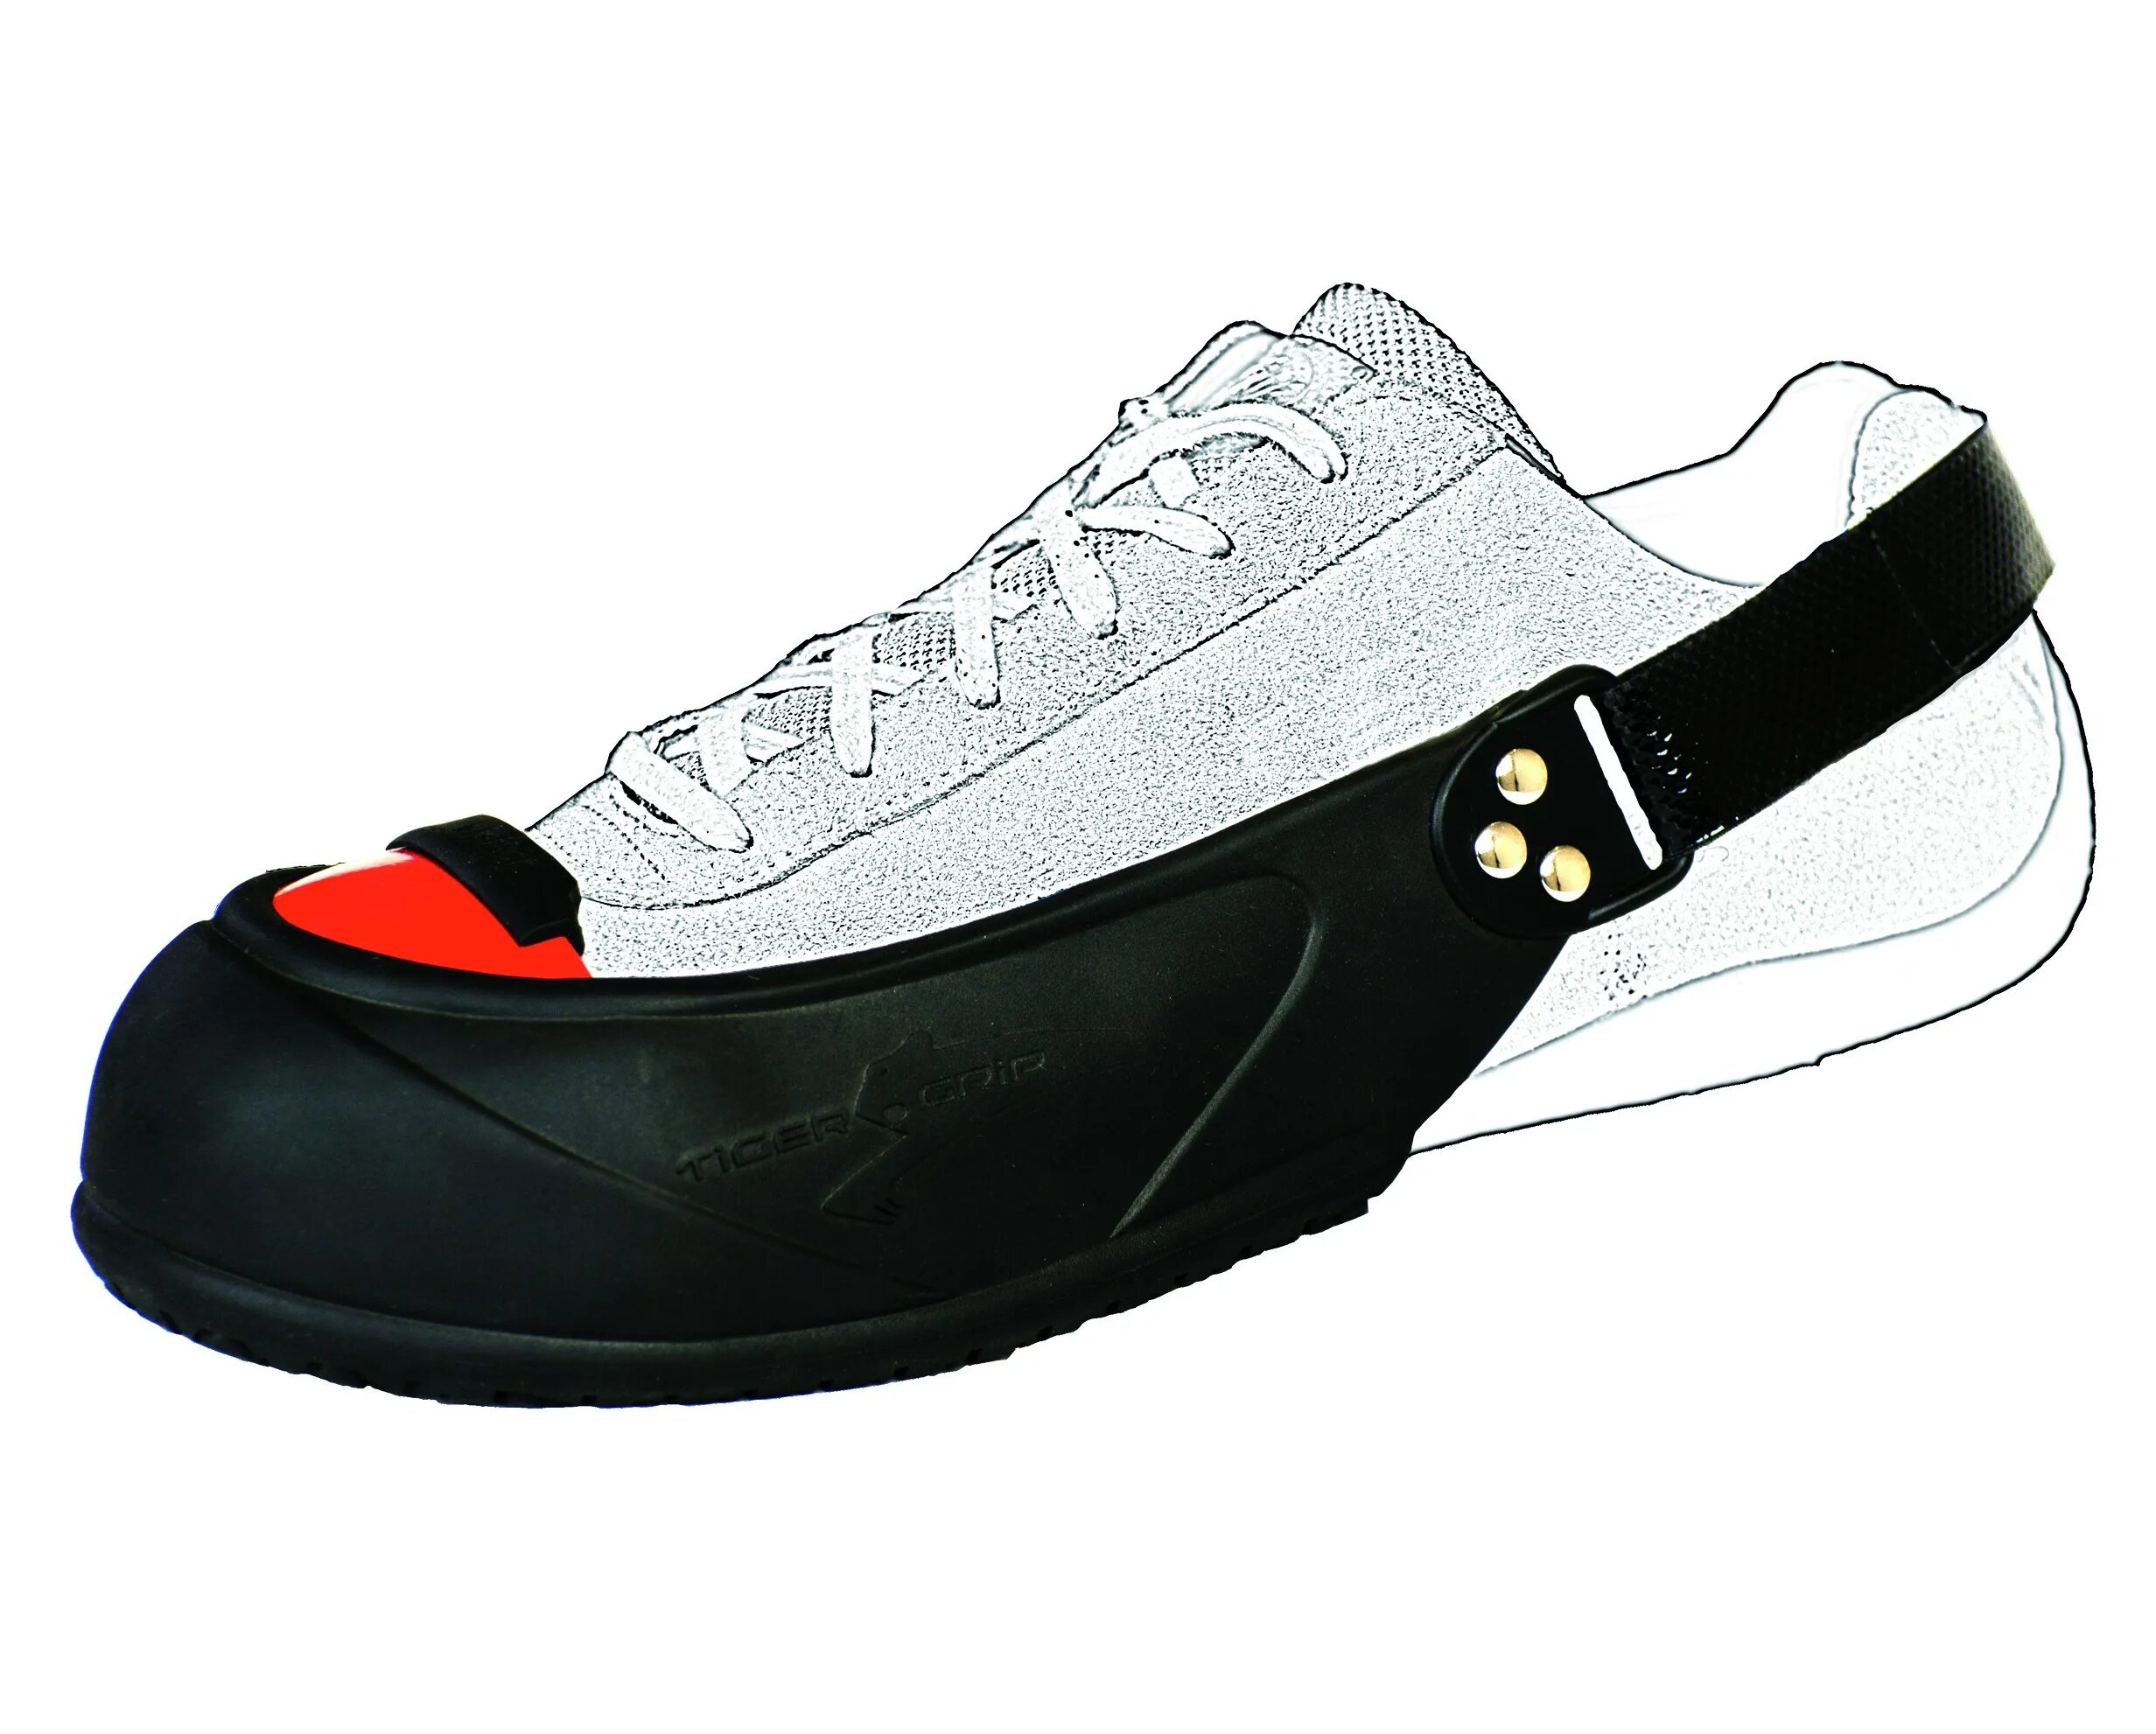 Защитные подноски Tiger Grip. Подносок защитный съемный универсальный (размер 35-45). Гостевые защитные подноски Tiger Grip Visitor. Защитные подноски на обувь.